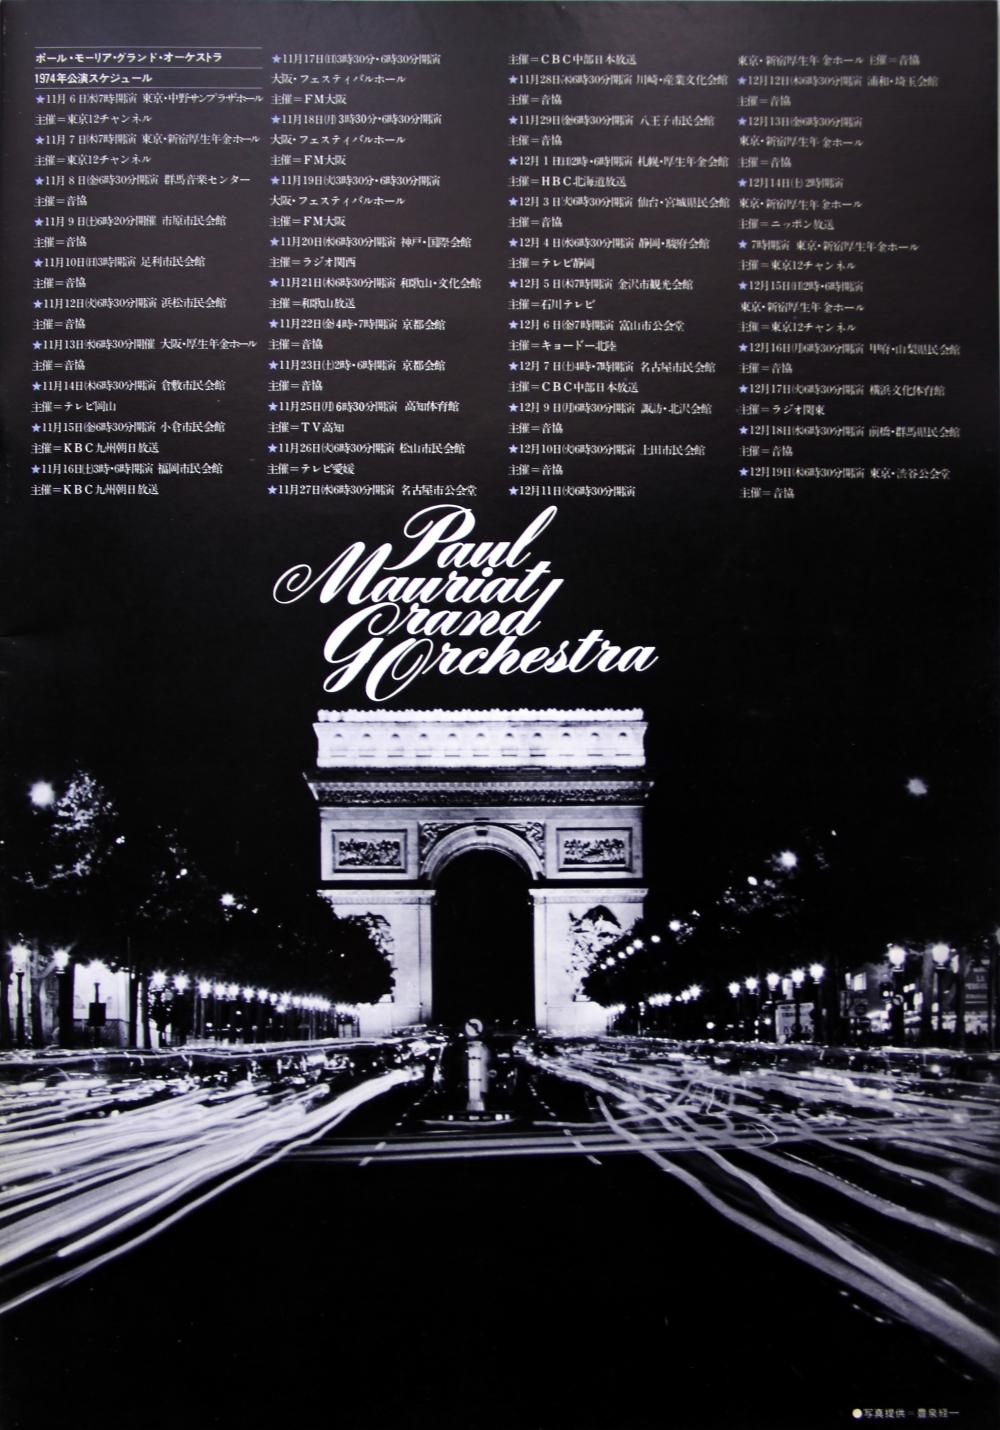 Paul Mauriat Japon 1974 programme